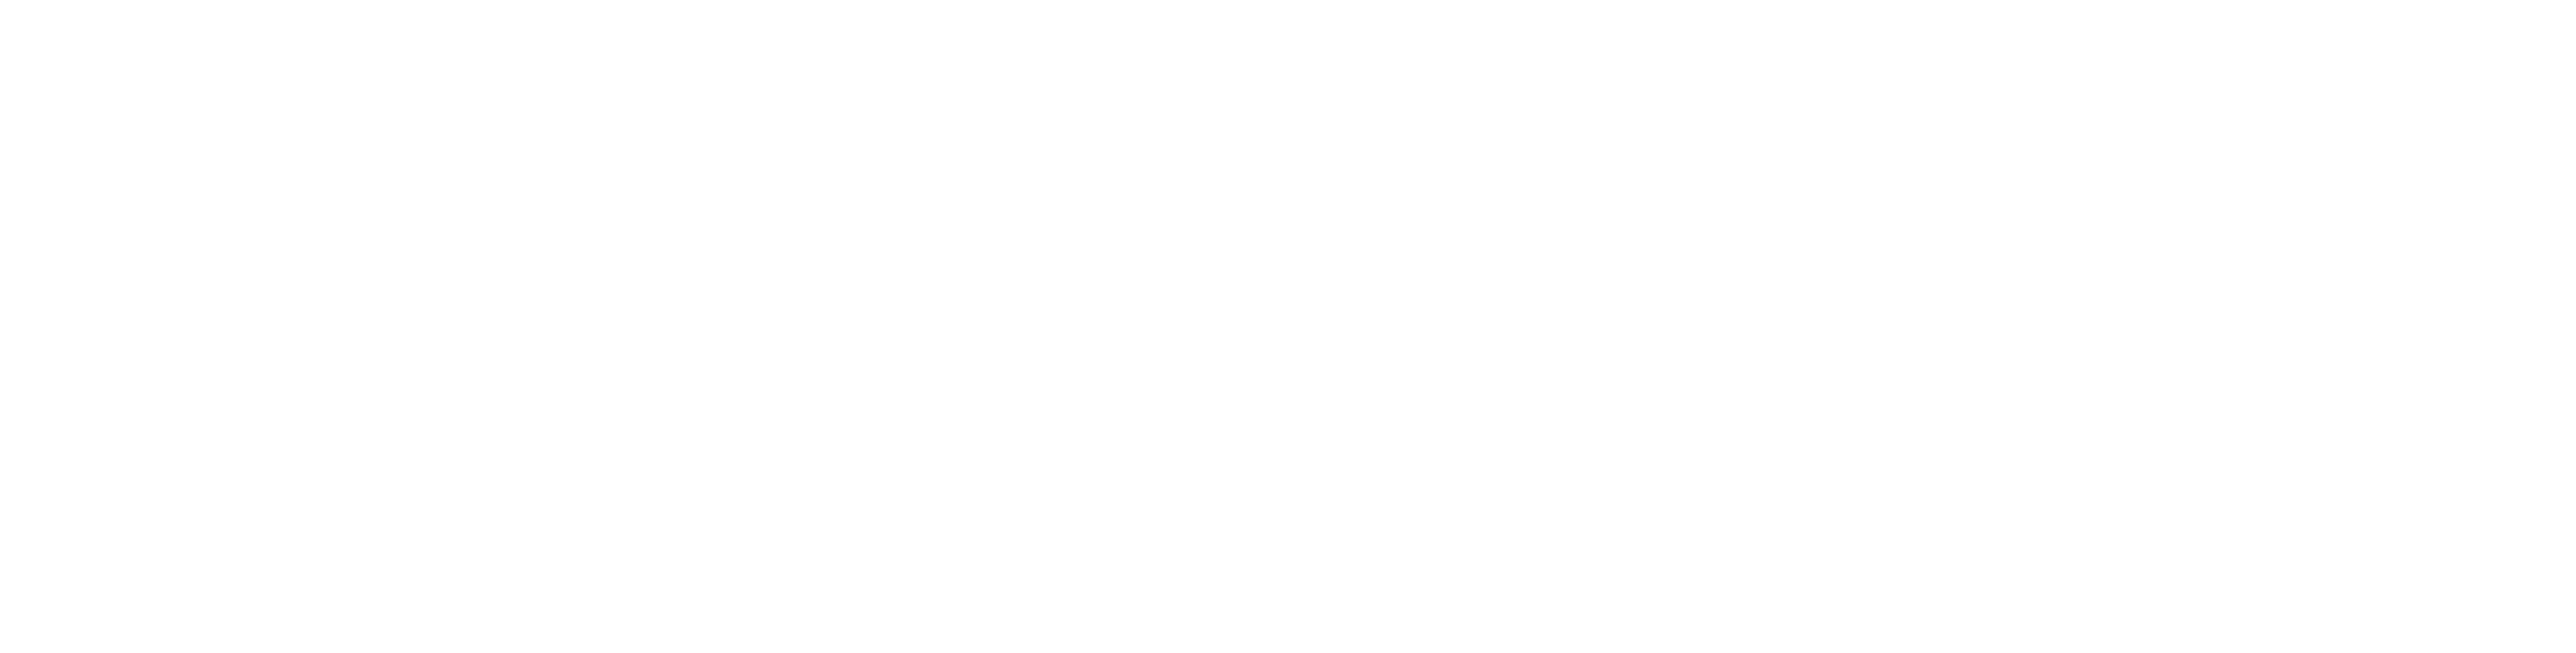 Lackland Theatre